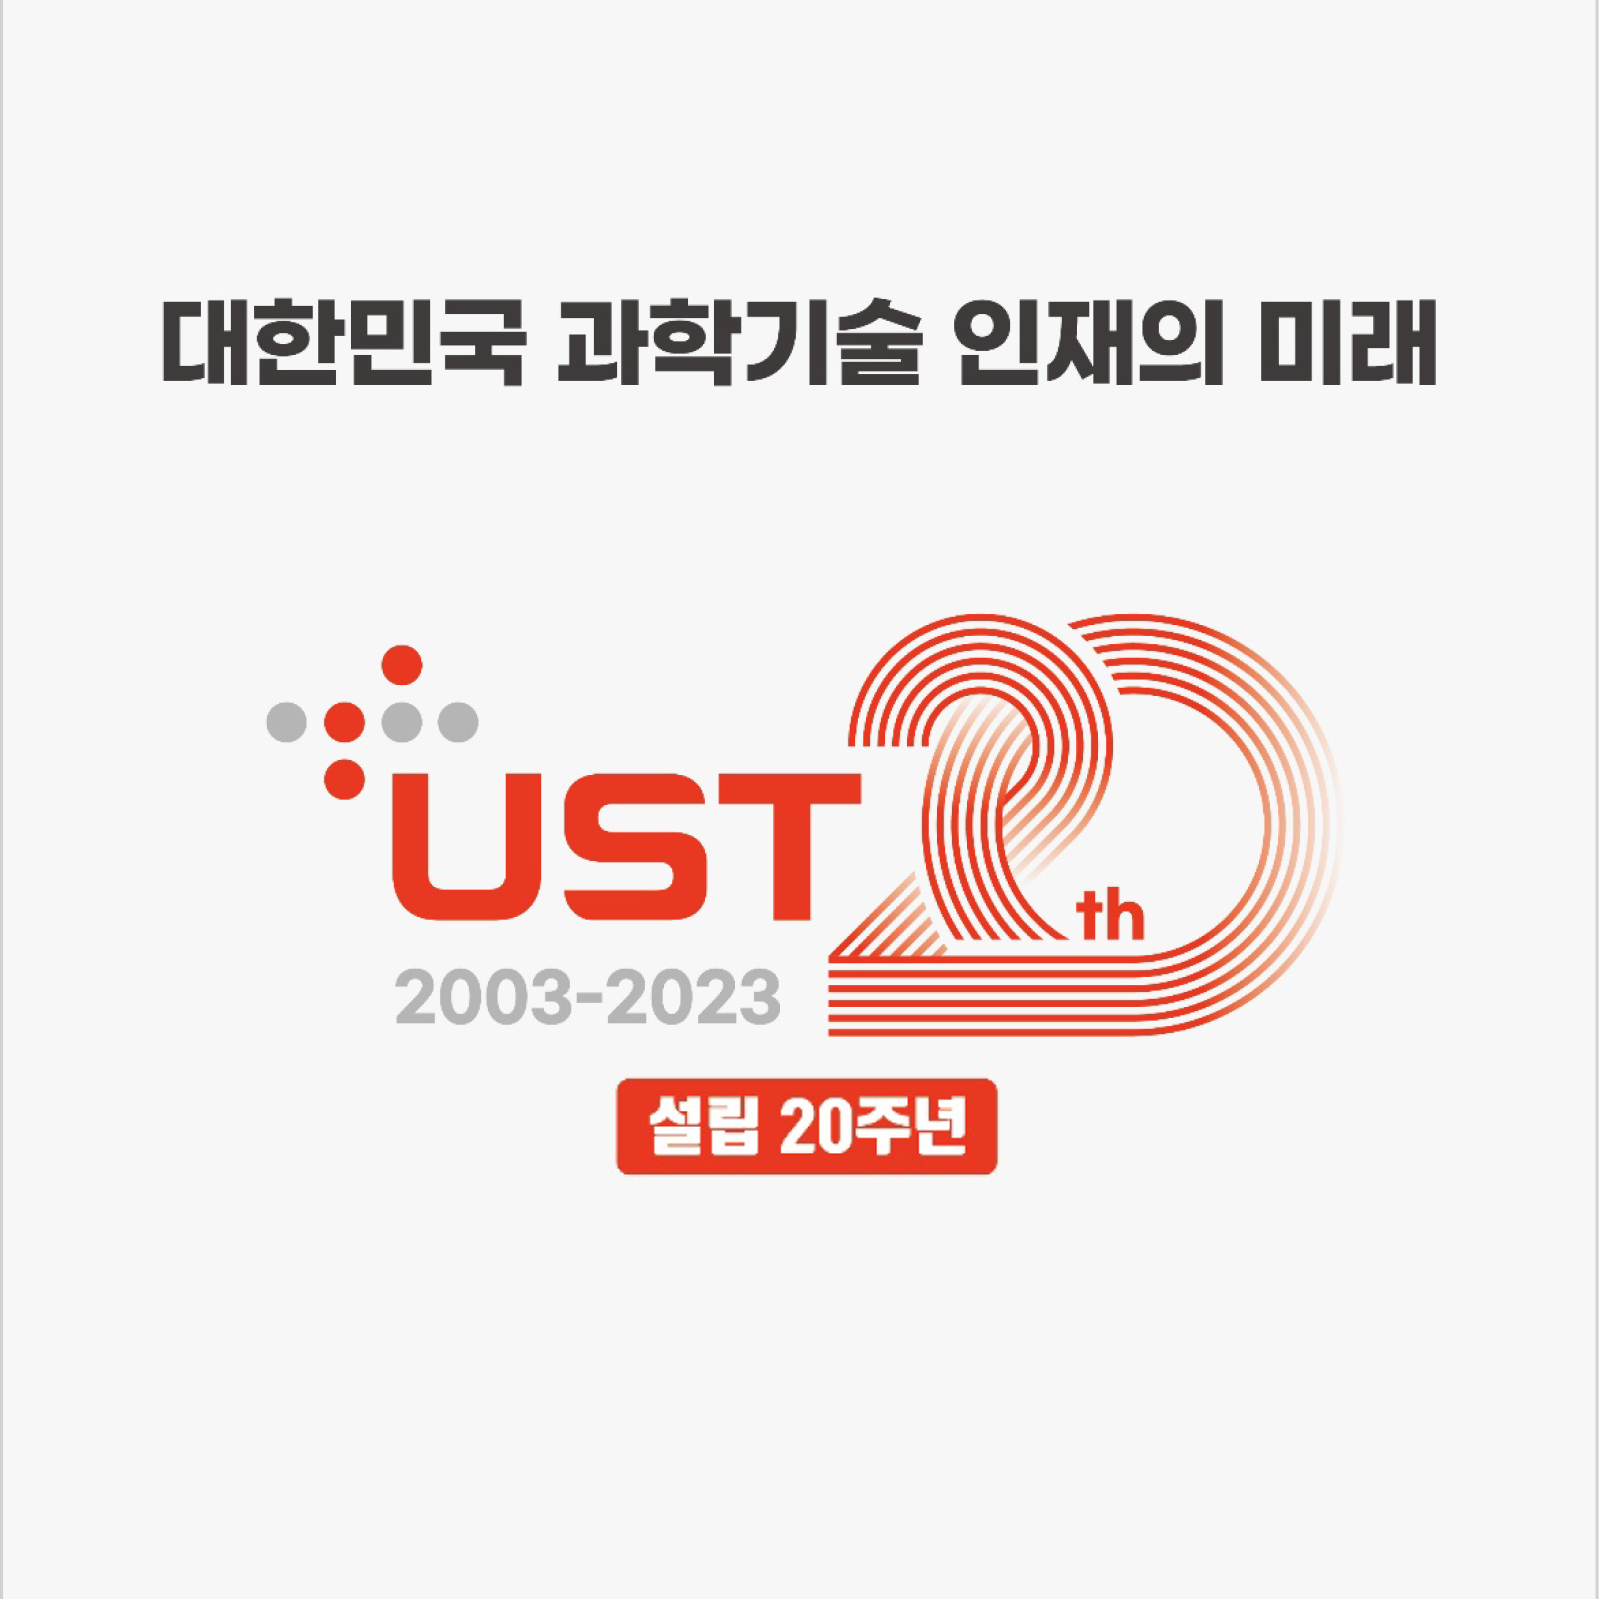 대한민국 과학기술 인재의 미래 UST 설립 20주년